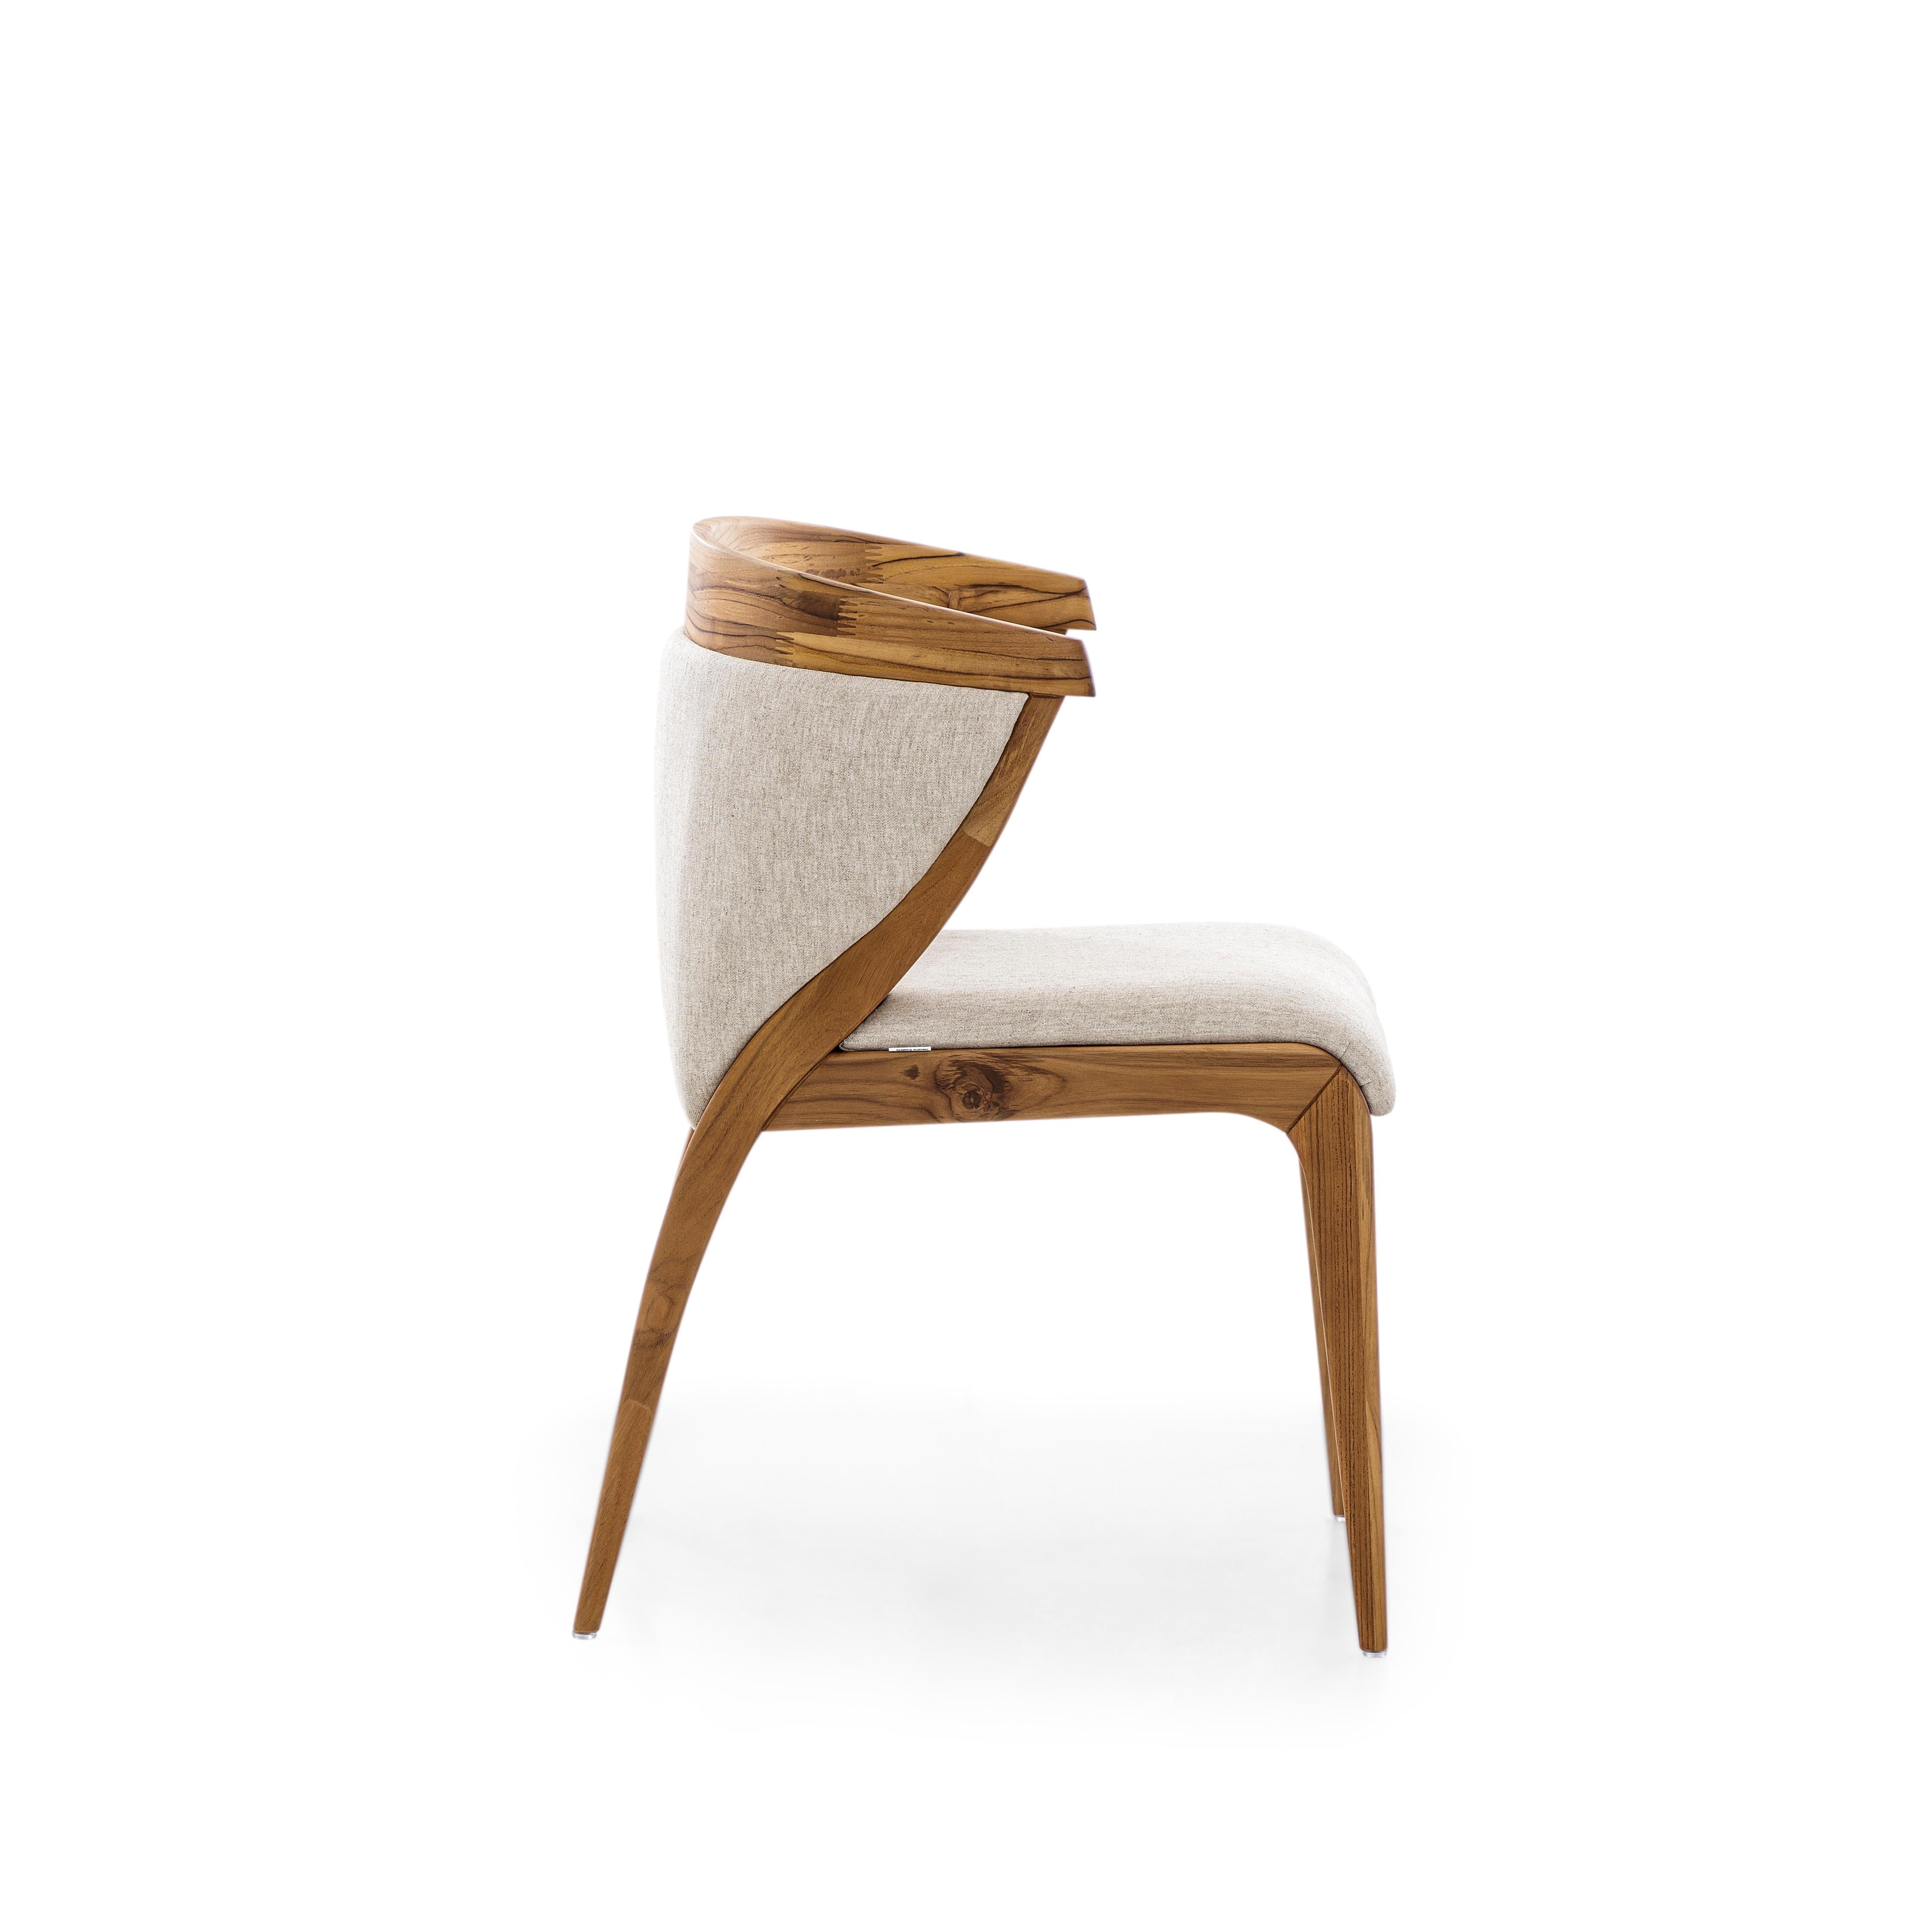 Unser Uultis-Team hat den formschönen Mat-Esszimmerstuhl entworfen, der Ihren schönen Esstisch mit einer gepolsterten Rückenlehne und Sitzfläche aus elfenbeinfarbenem Stoff und einem Finish aus Teakholz schmückt. Dieser Stuhl hat ein wunderschönes,